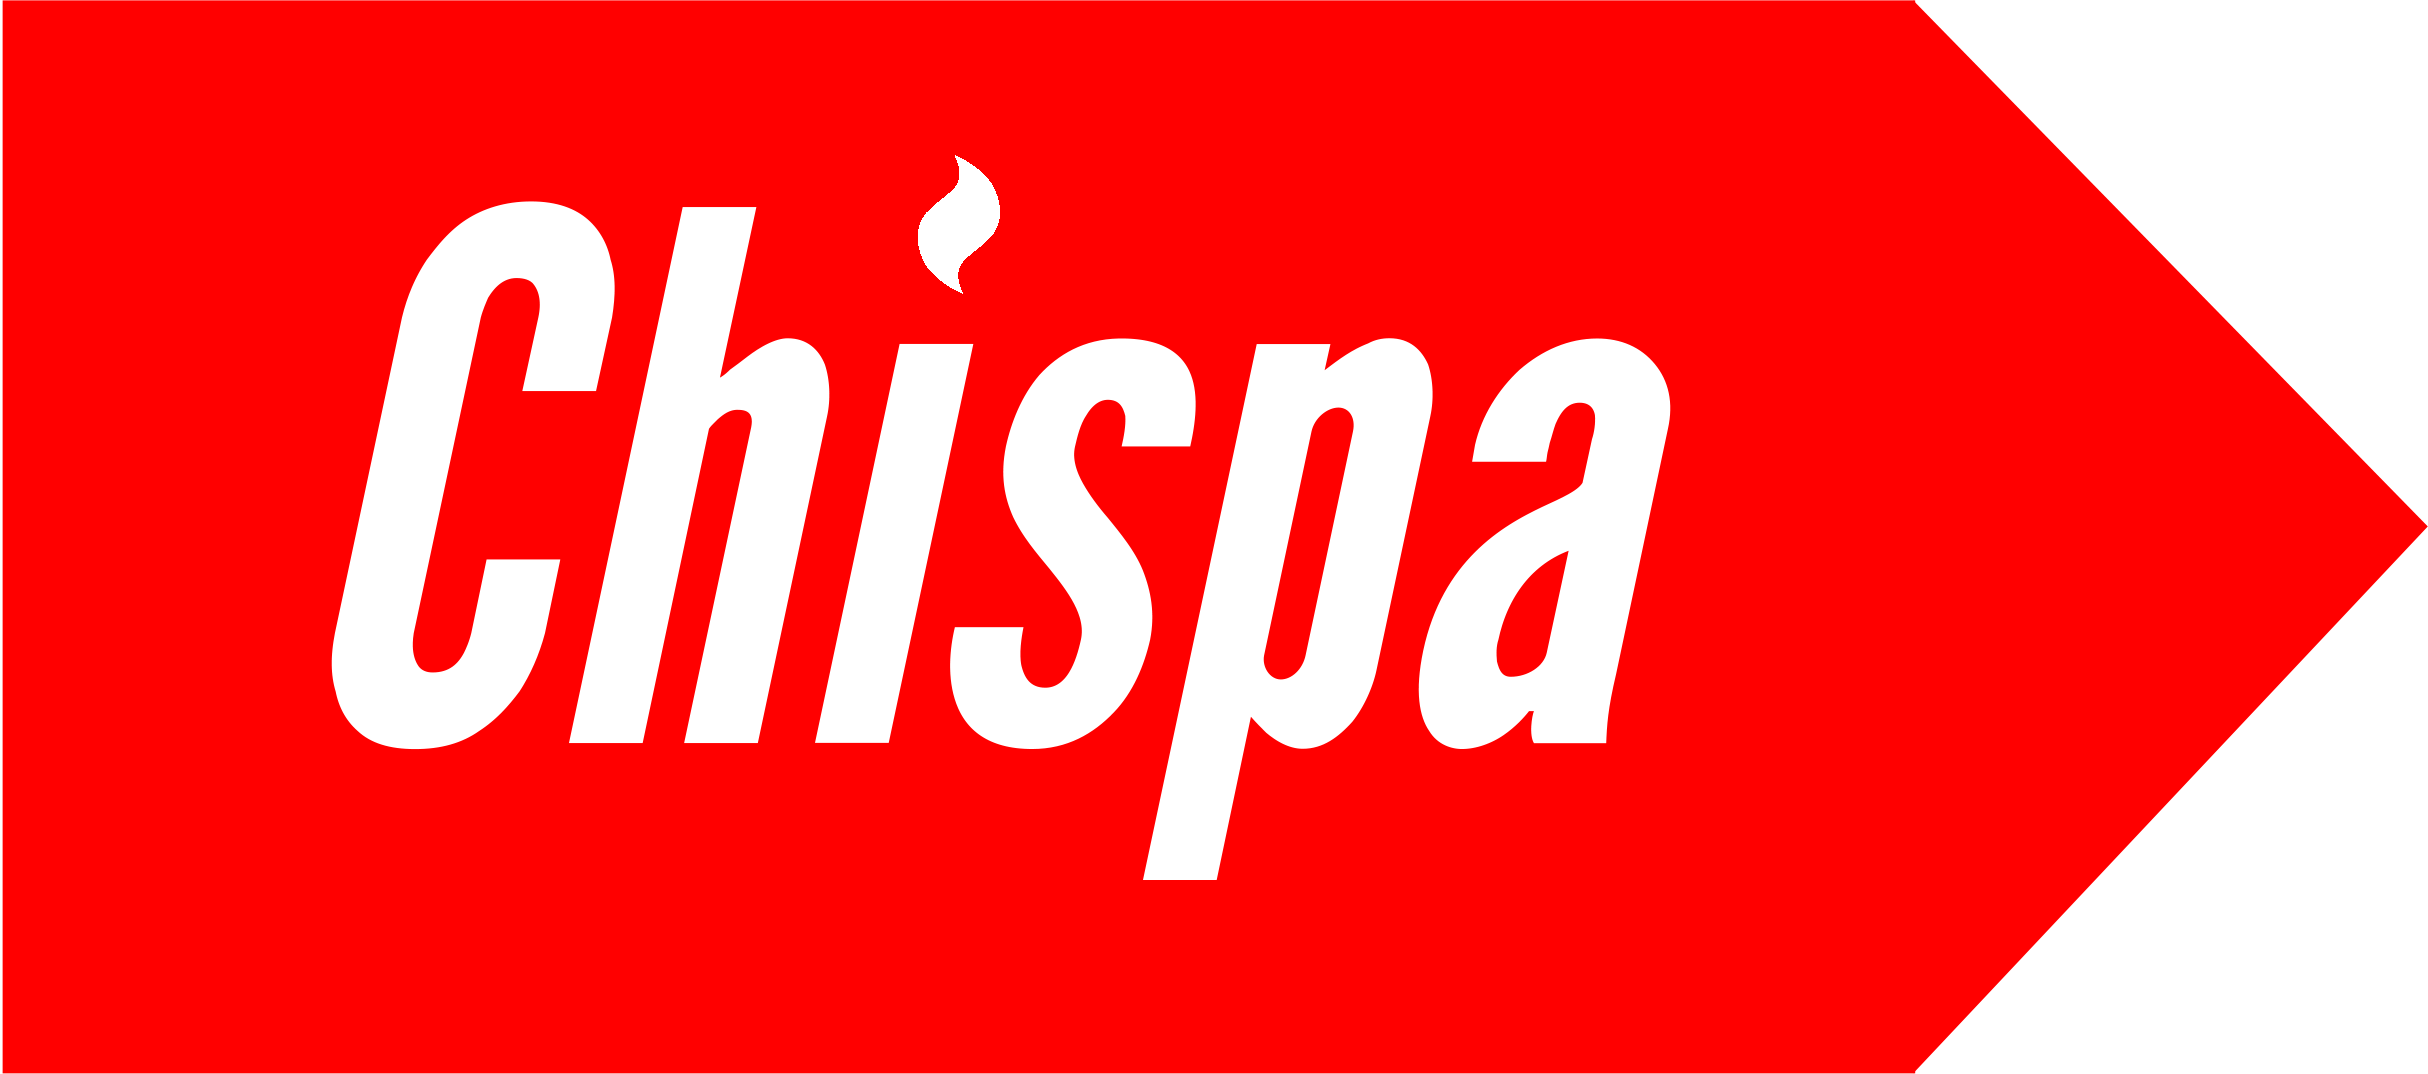 is chispa safe